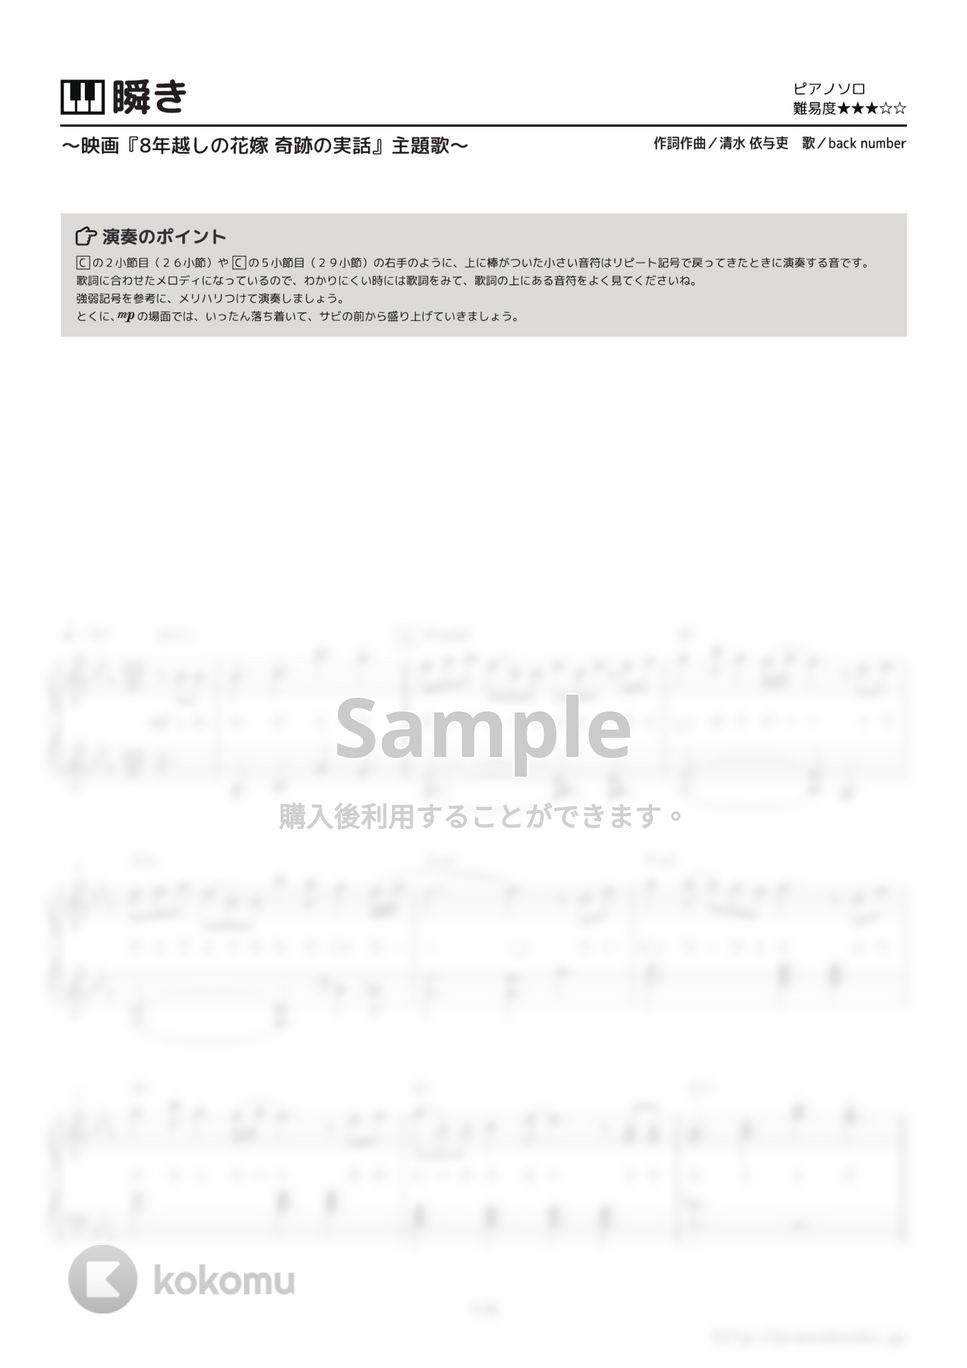 back number - 瞬き (映画『8年越しの花嫁 奇跡の実話』主題歌) by ピアノの本棚